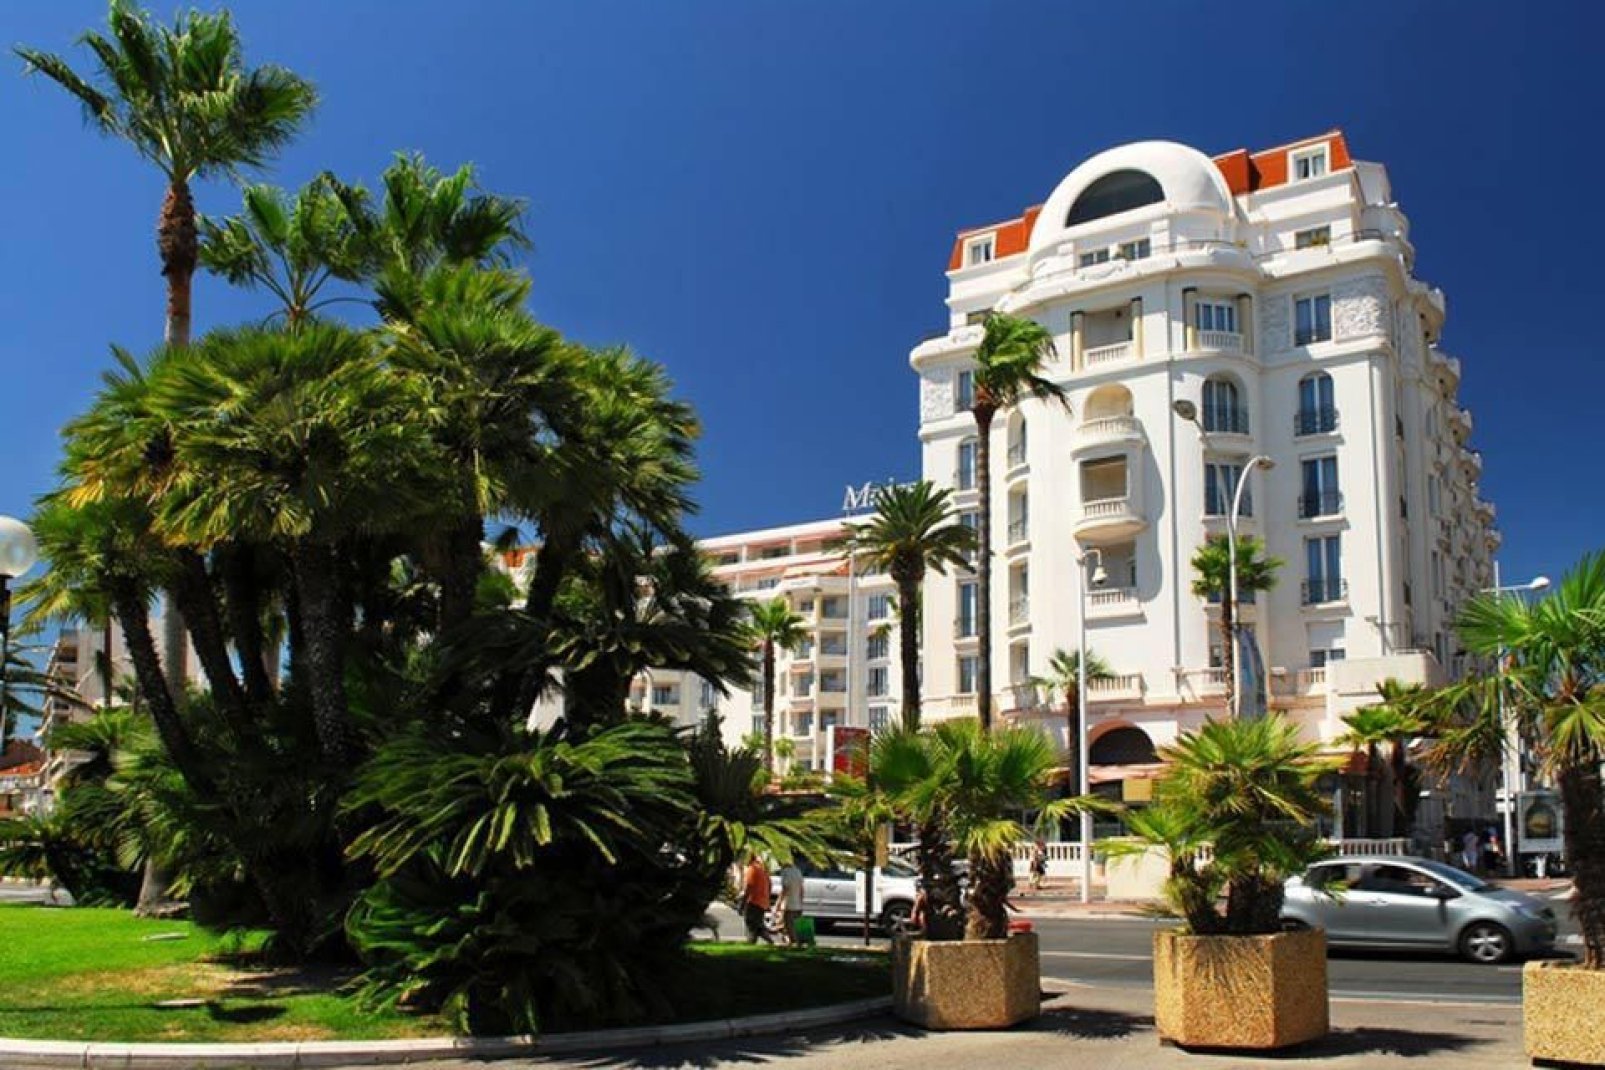 Die angesehene und reiche Stadt Cannes ist weniger oberflächlich, als dies auf den ersten Blick erscheinen mag.